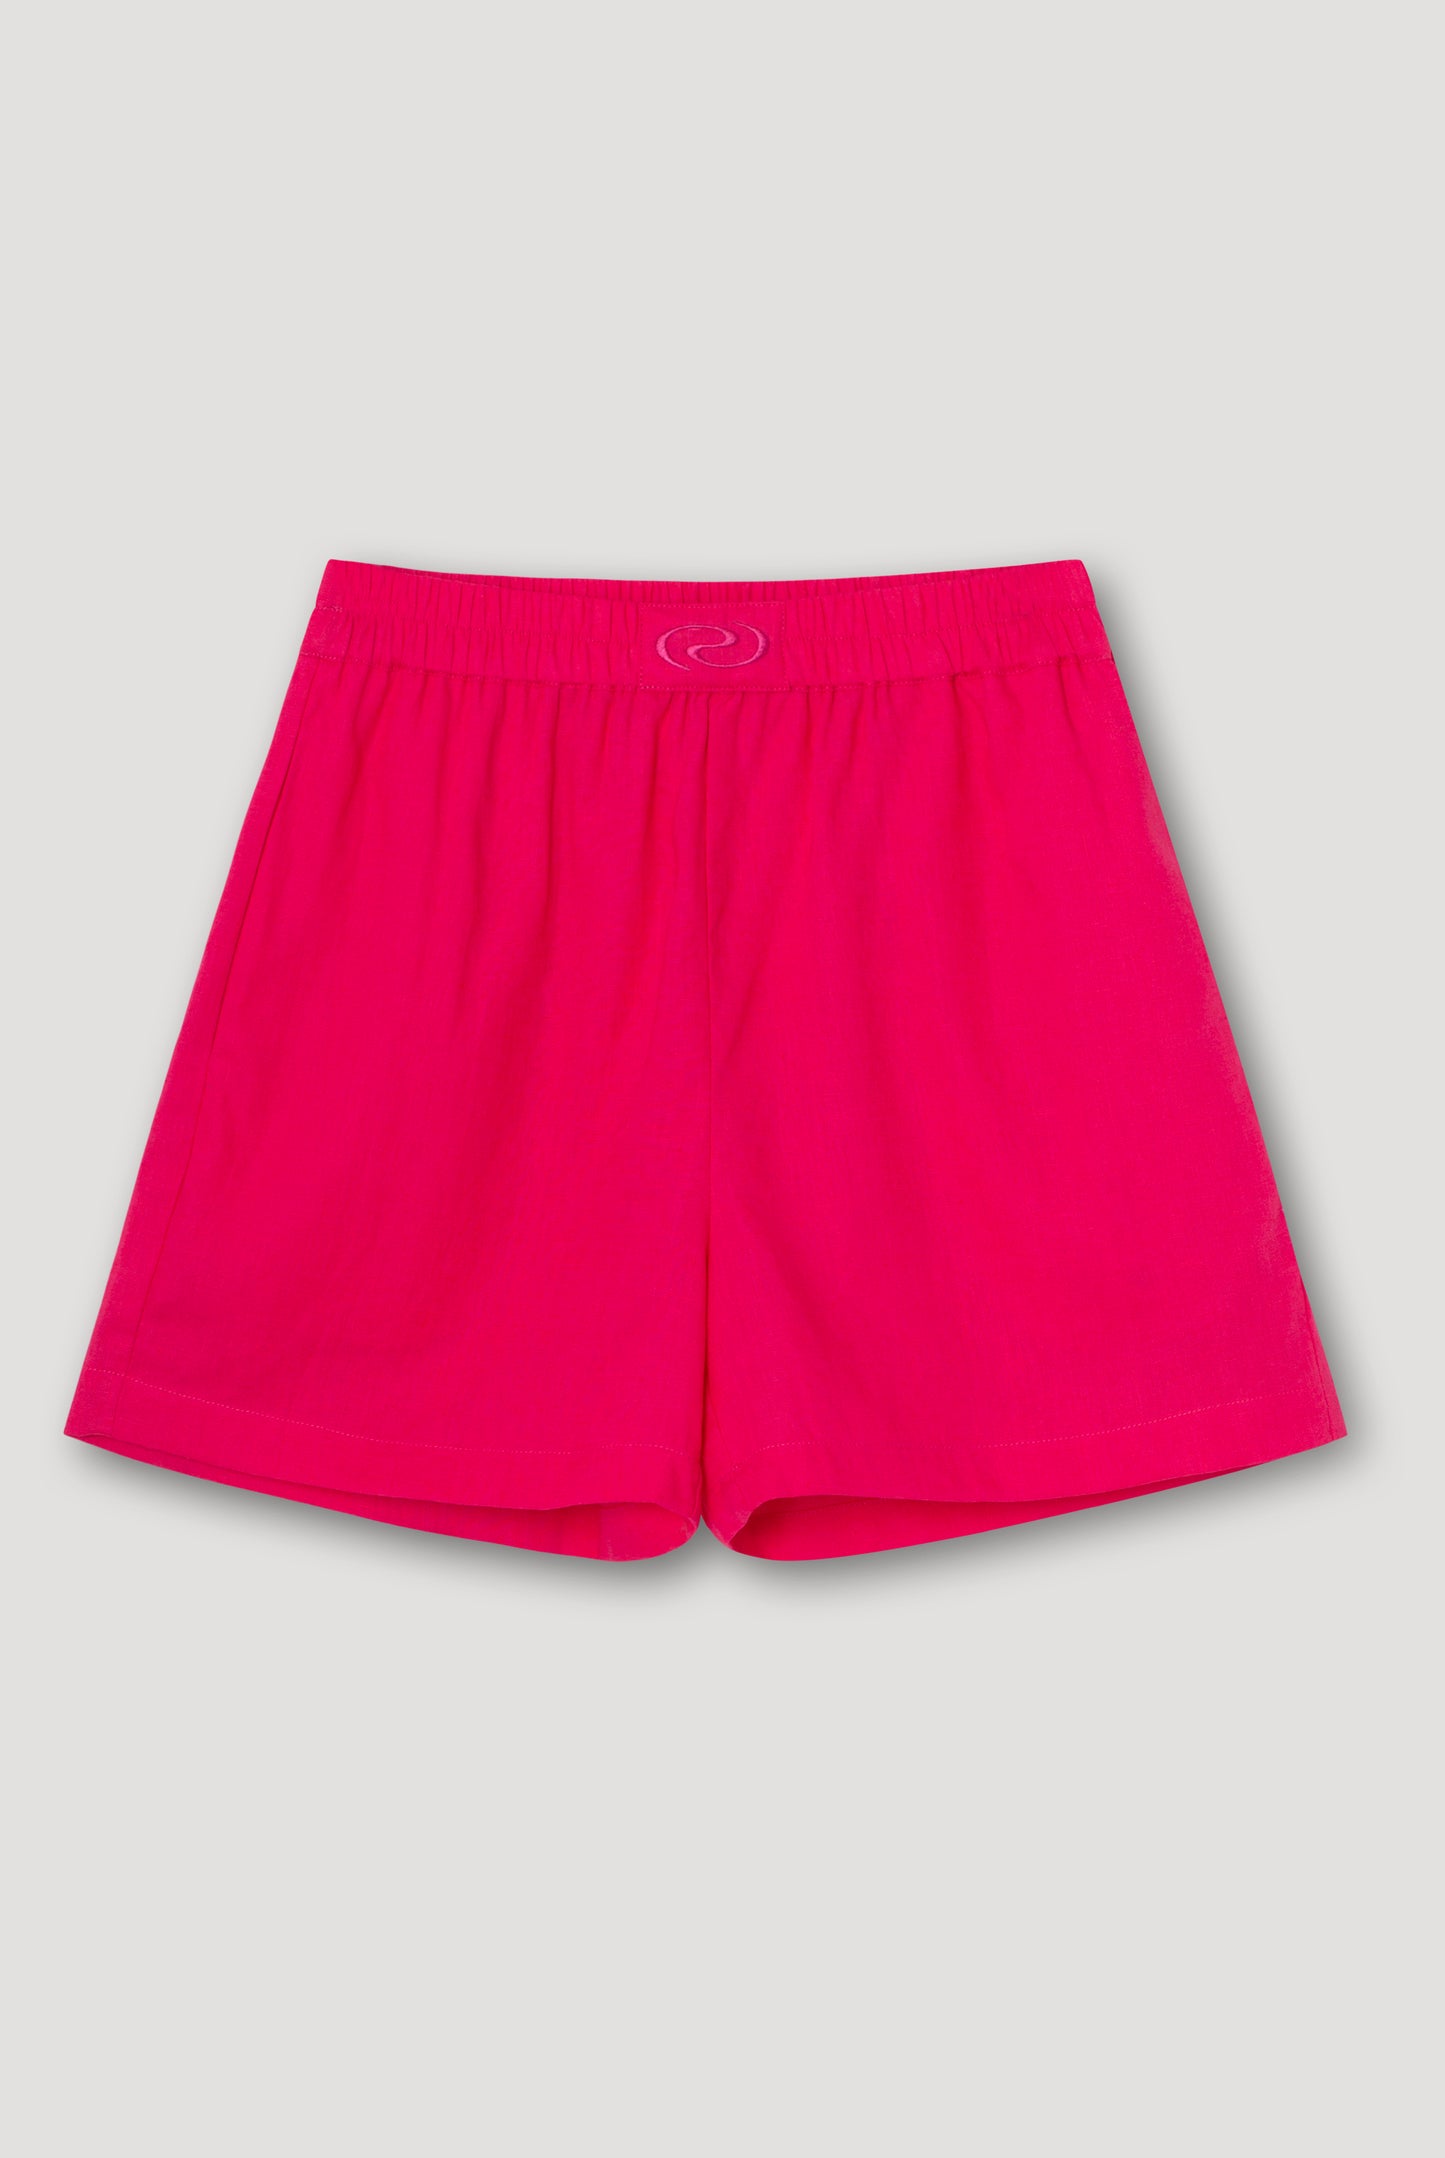 SaraRS Shorts Cosmo Pink